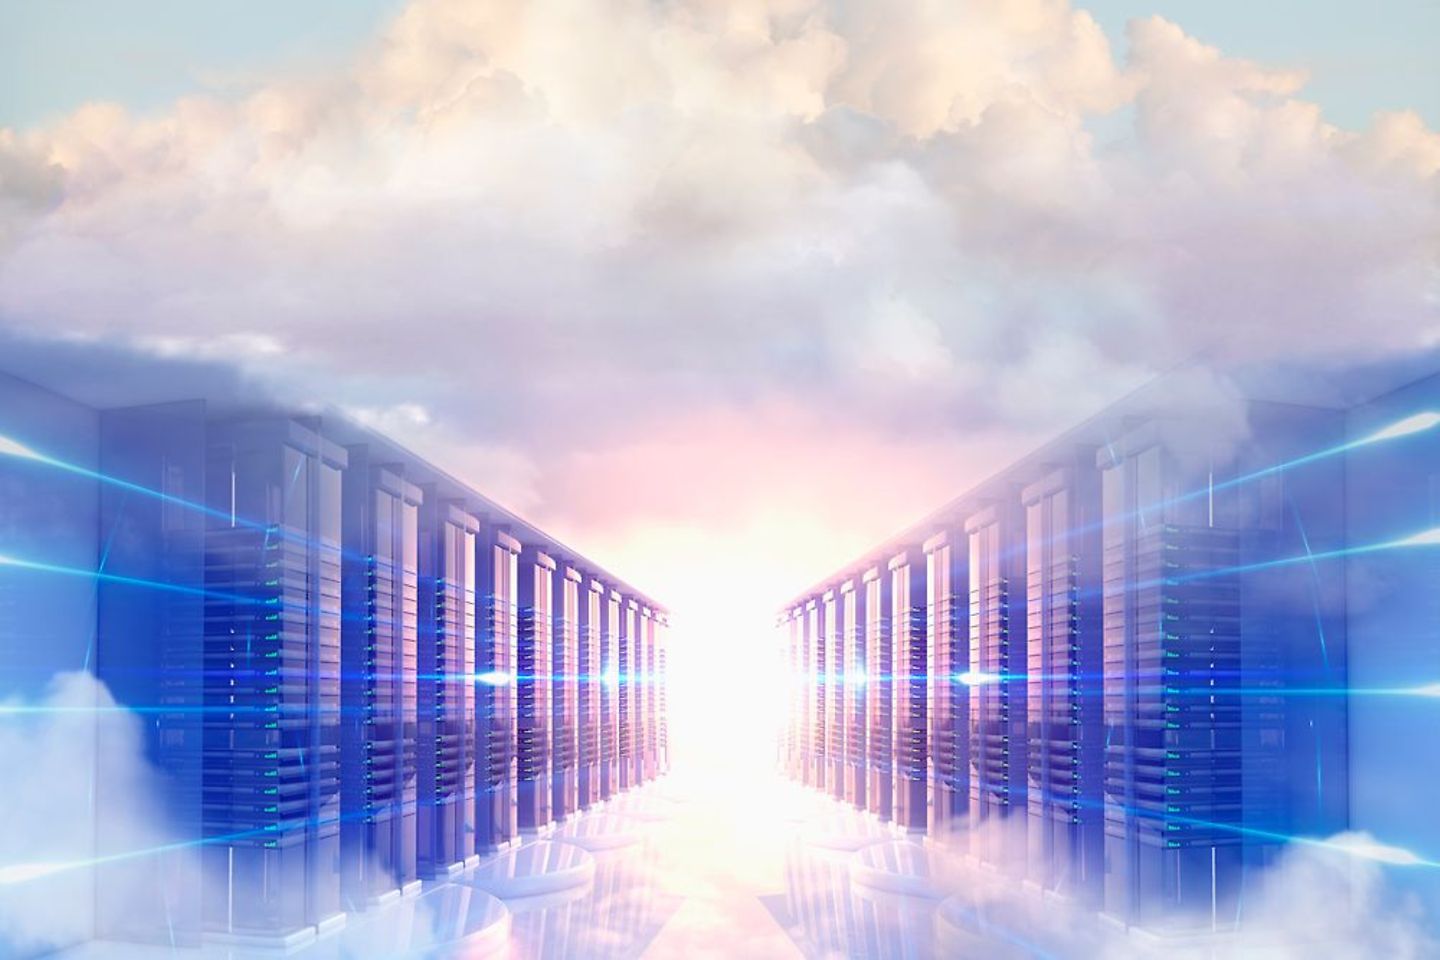 Armarios de servidores rodeados de nubes de colores pastel y una fuente de luz en el centro